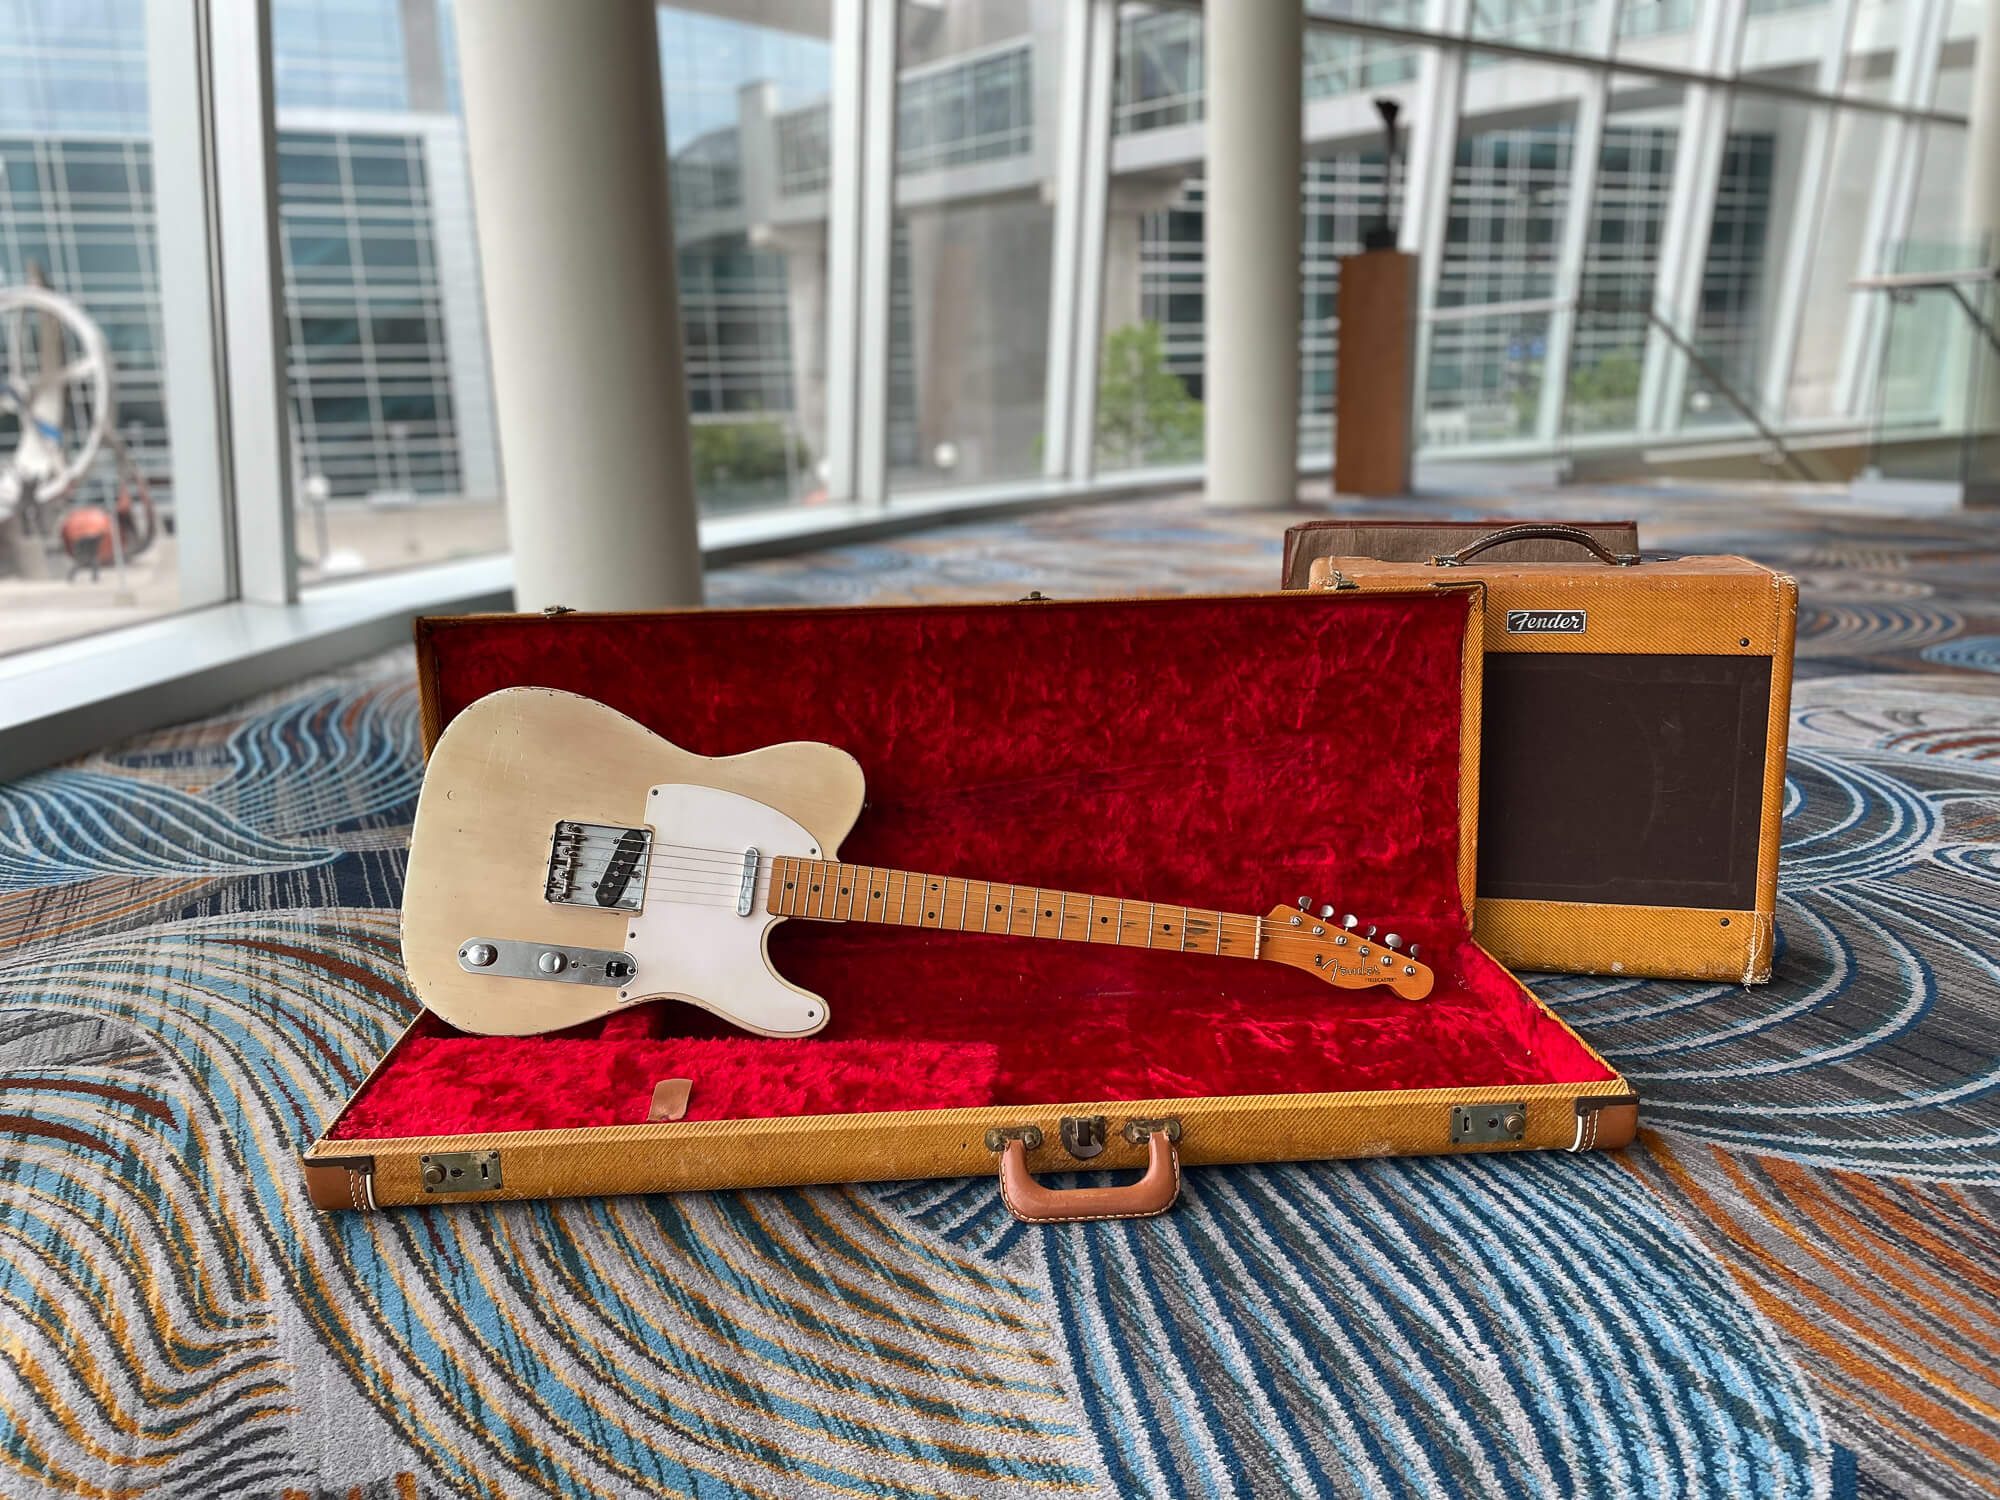 1958 Fender Telecaster and Fender amplifier in Nebraska